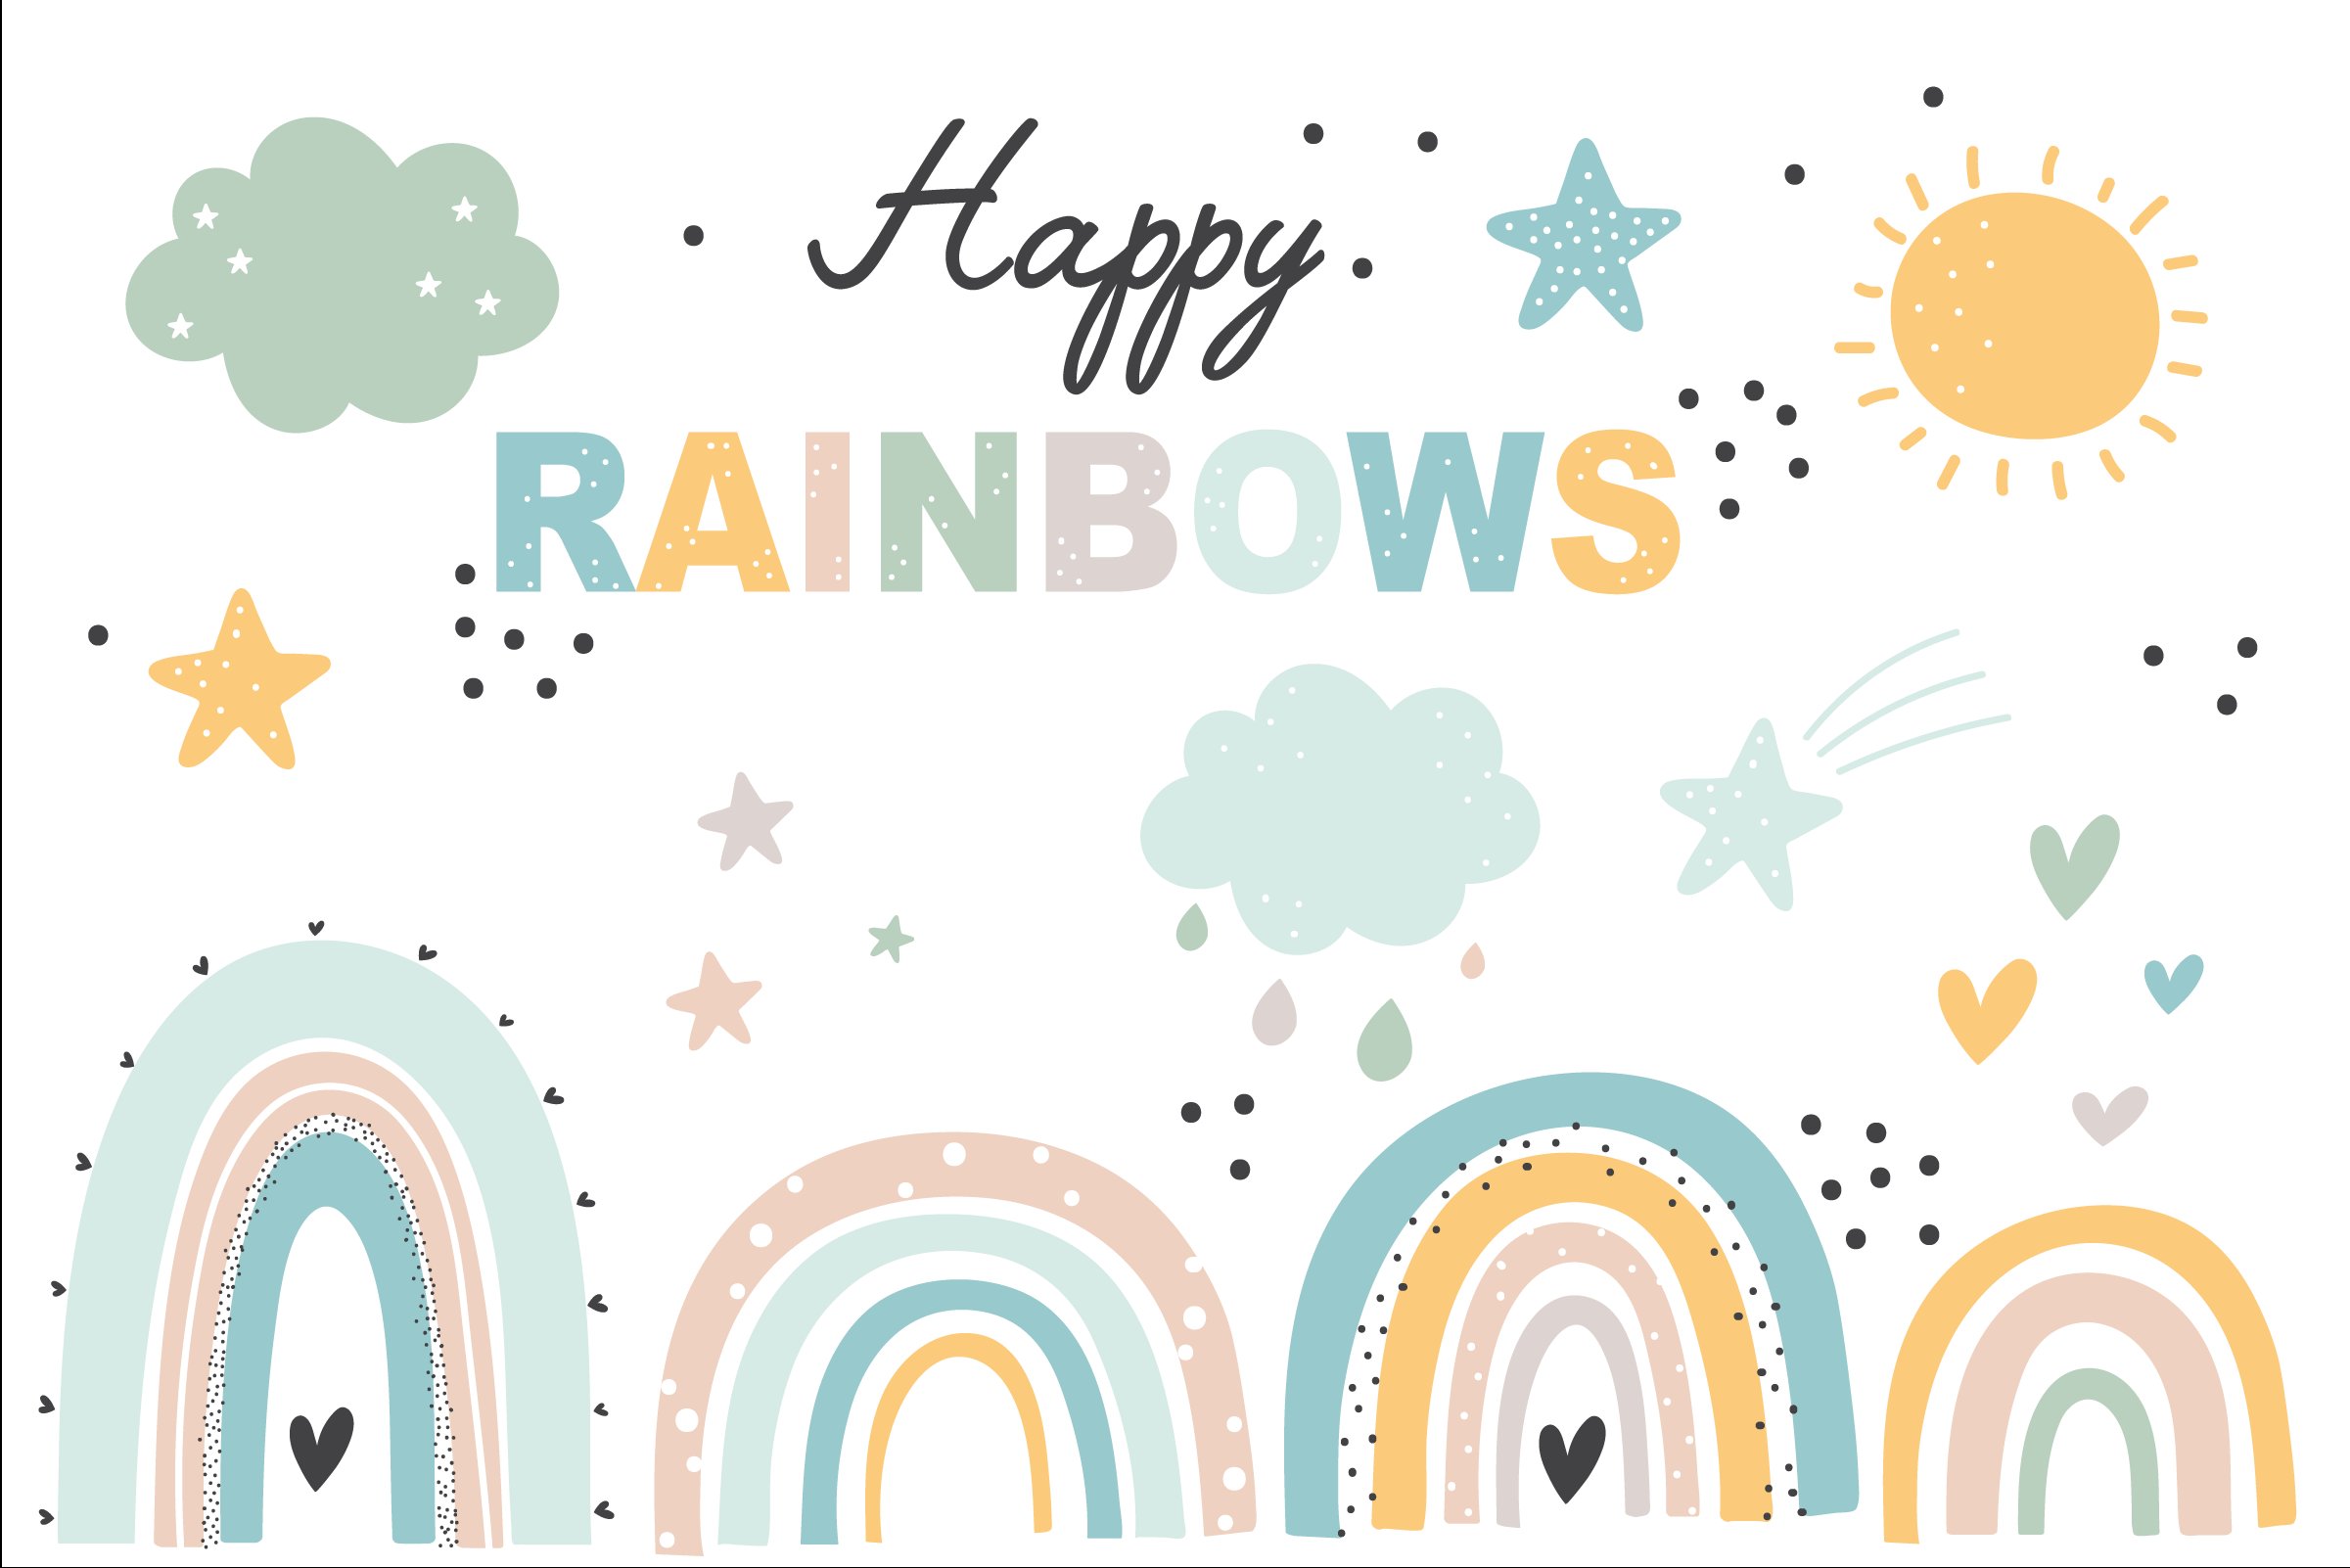 Happy Rainbows set cover image.